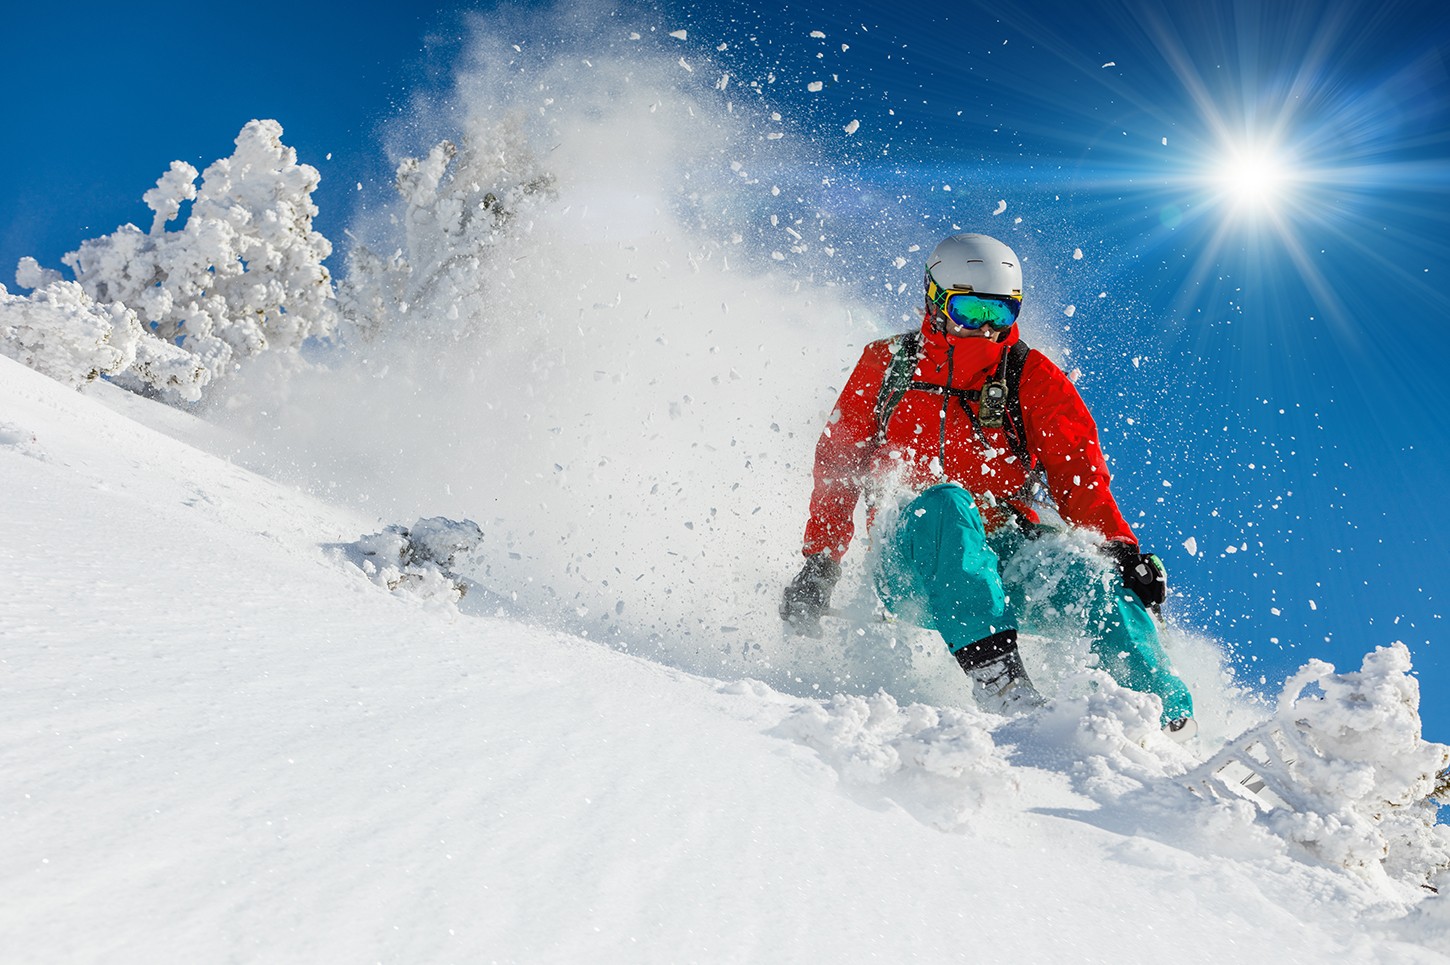 5 ลานสกีสุดเจ๋งในฮอกไกโด อยากเล่นสกีมันส์ๆ ในฤดูหนาวของญี่ปุ่น หิมะนุ่ม เซลฟี่ ฟินสุด